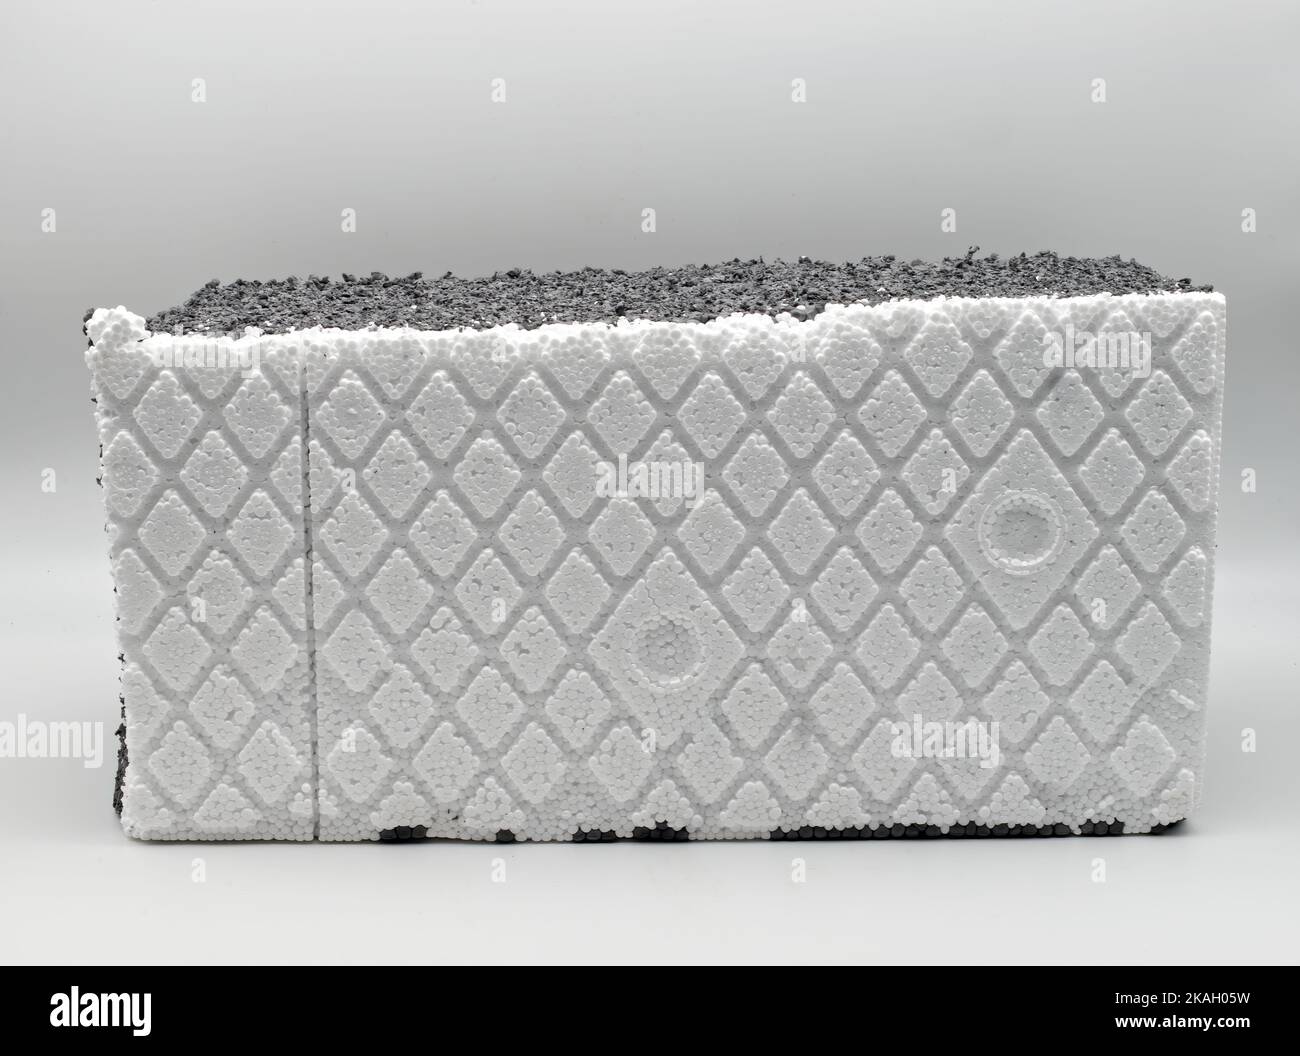 Isolierplatten aus geschäumtem Polystyrol, isoliert auf weißem Hintergrund. Energieeffizienzkonzept. Stockfoto